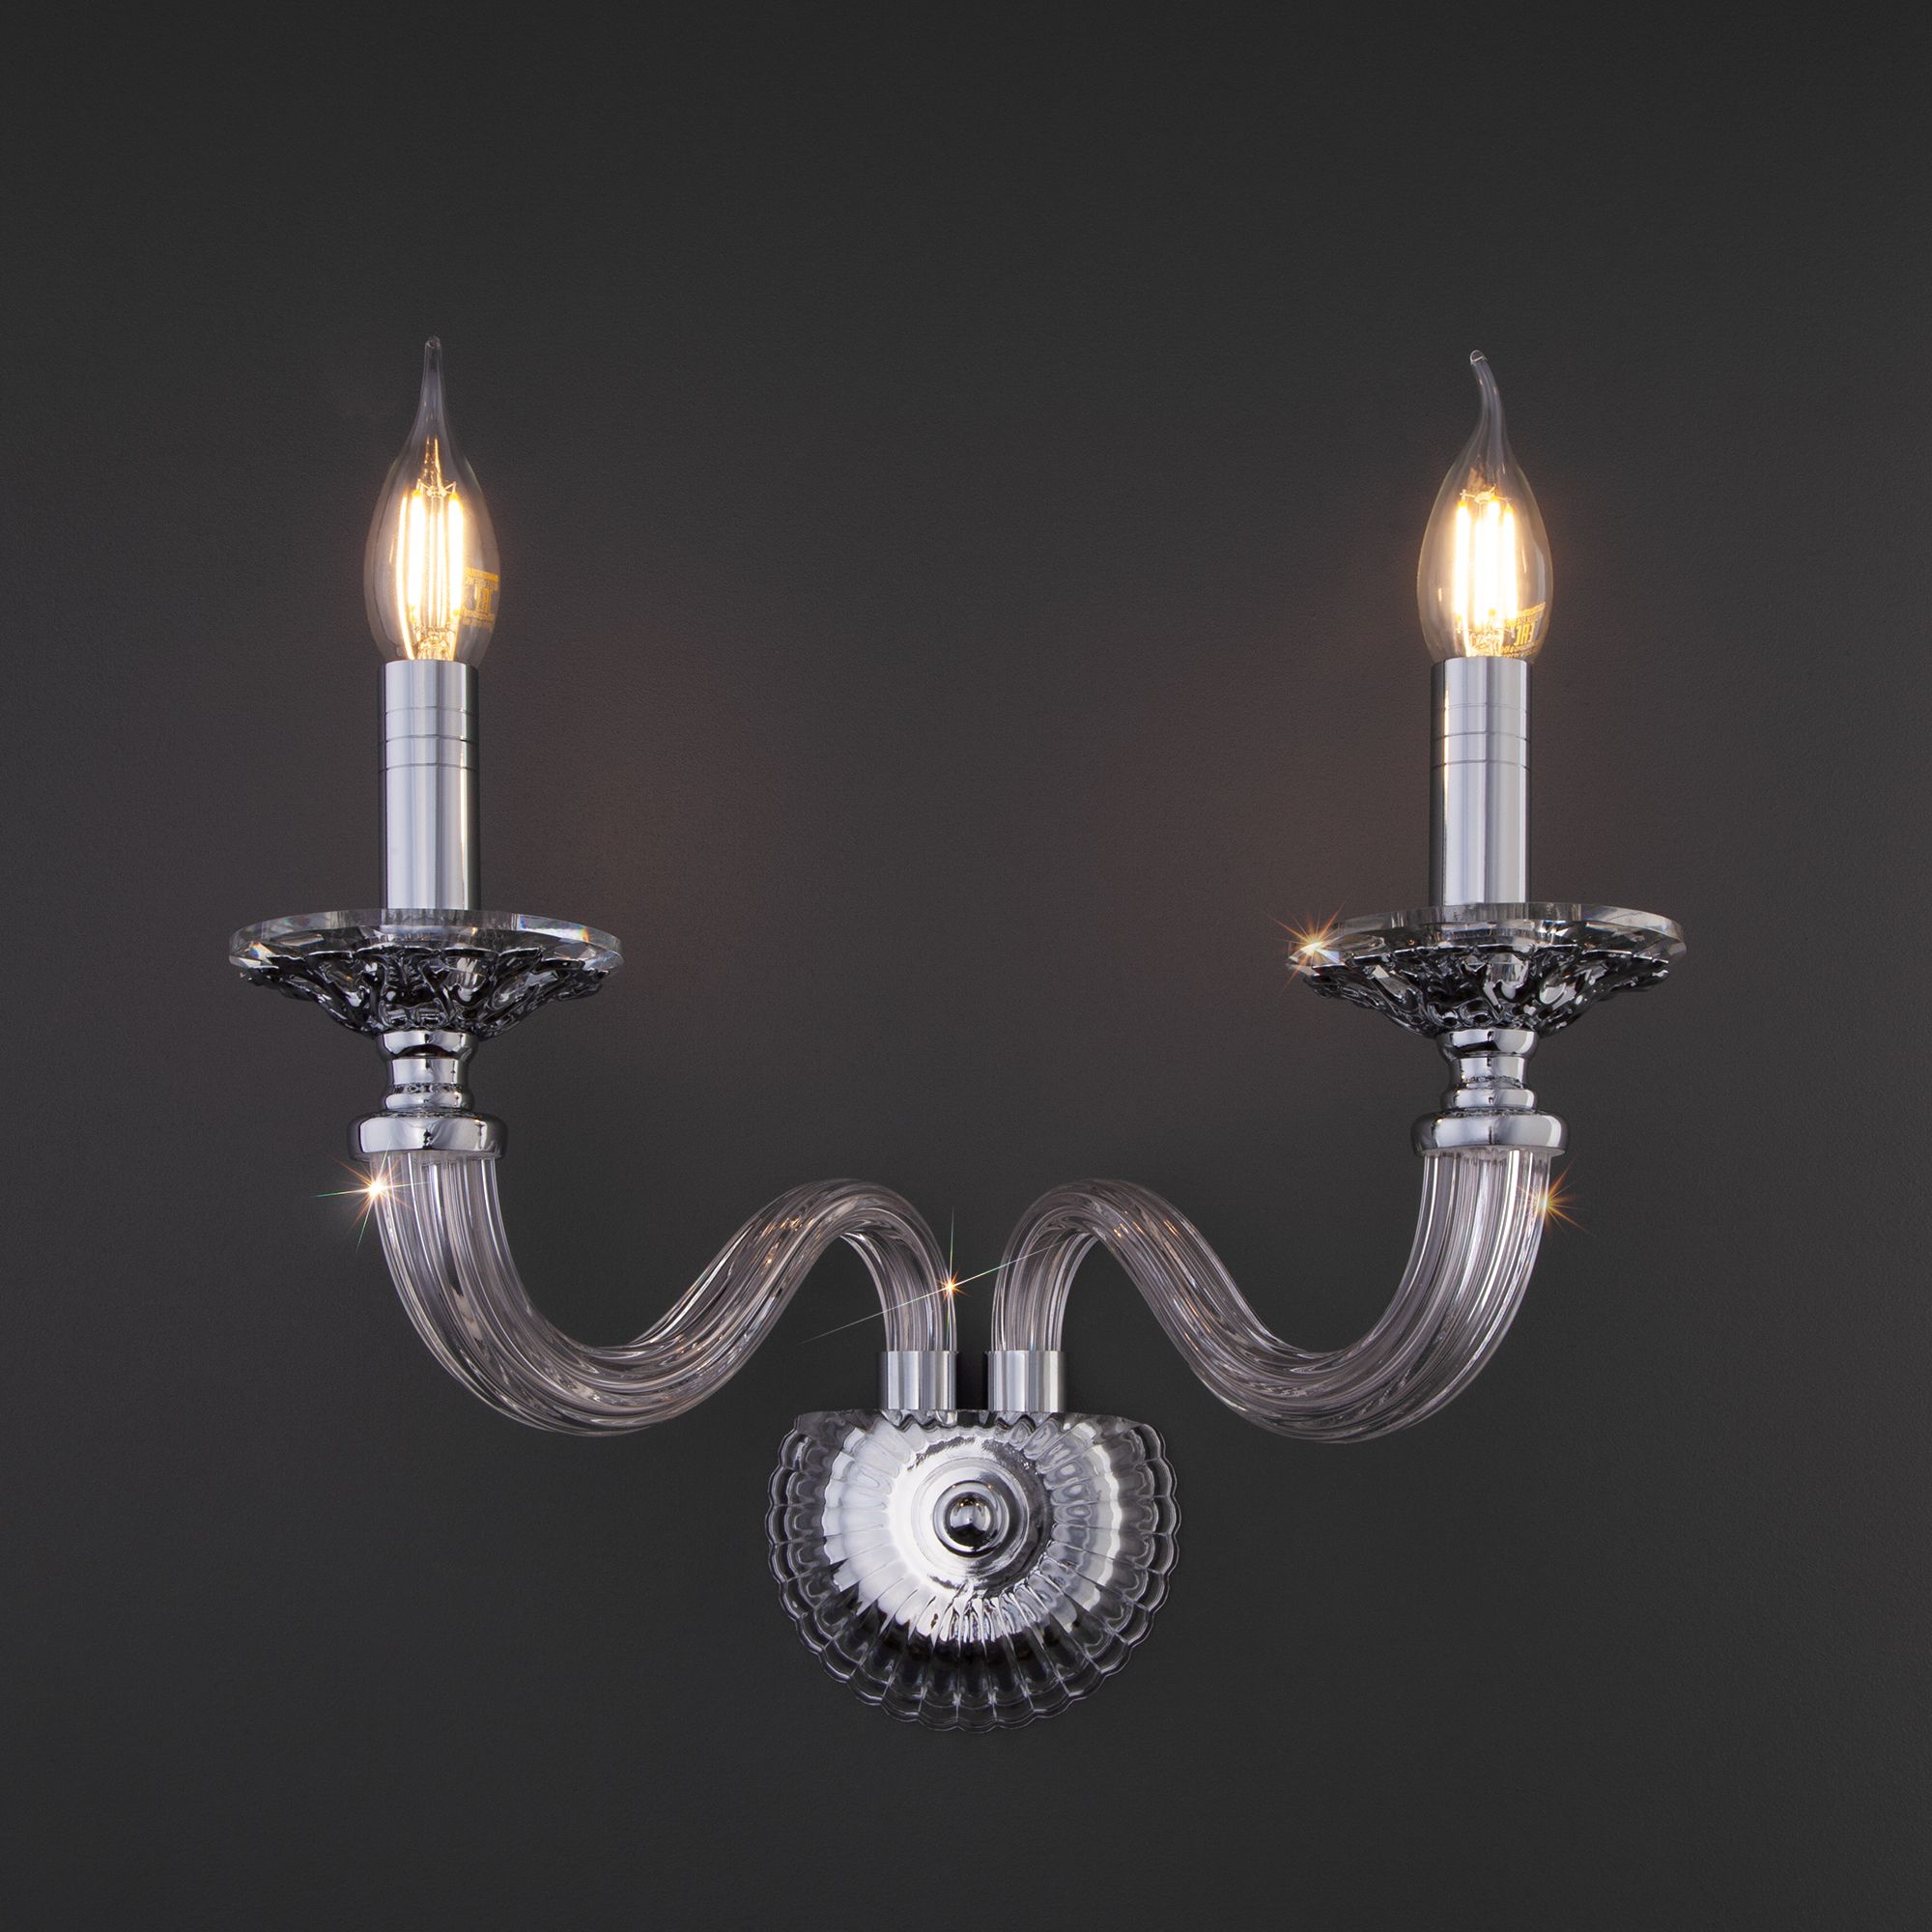 Настенный светильник в классическом стиле Bogate's Olenna 338/2. Фото 2